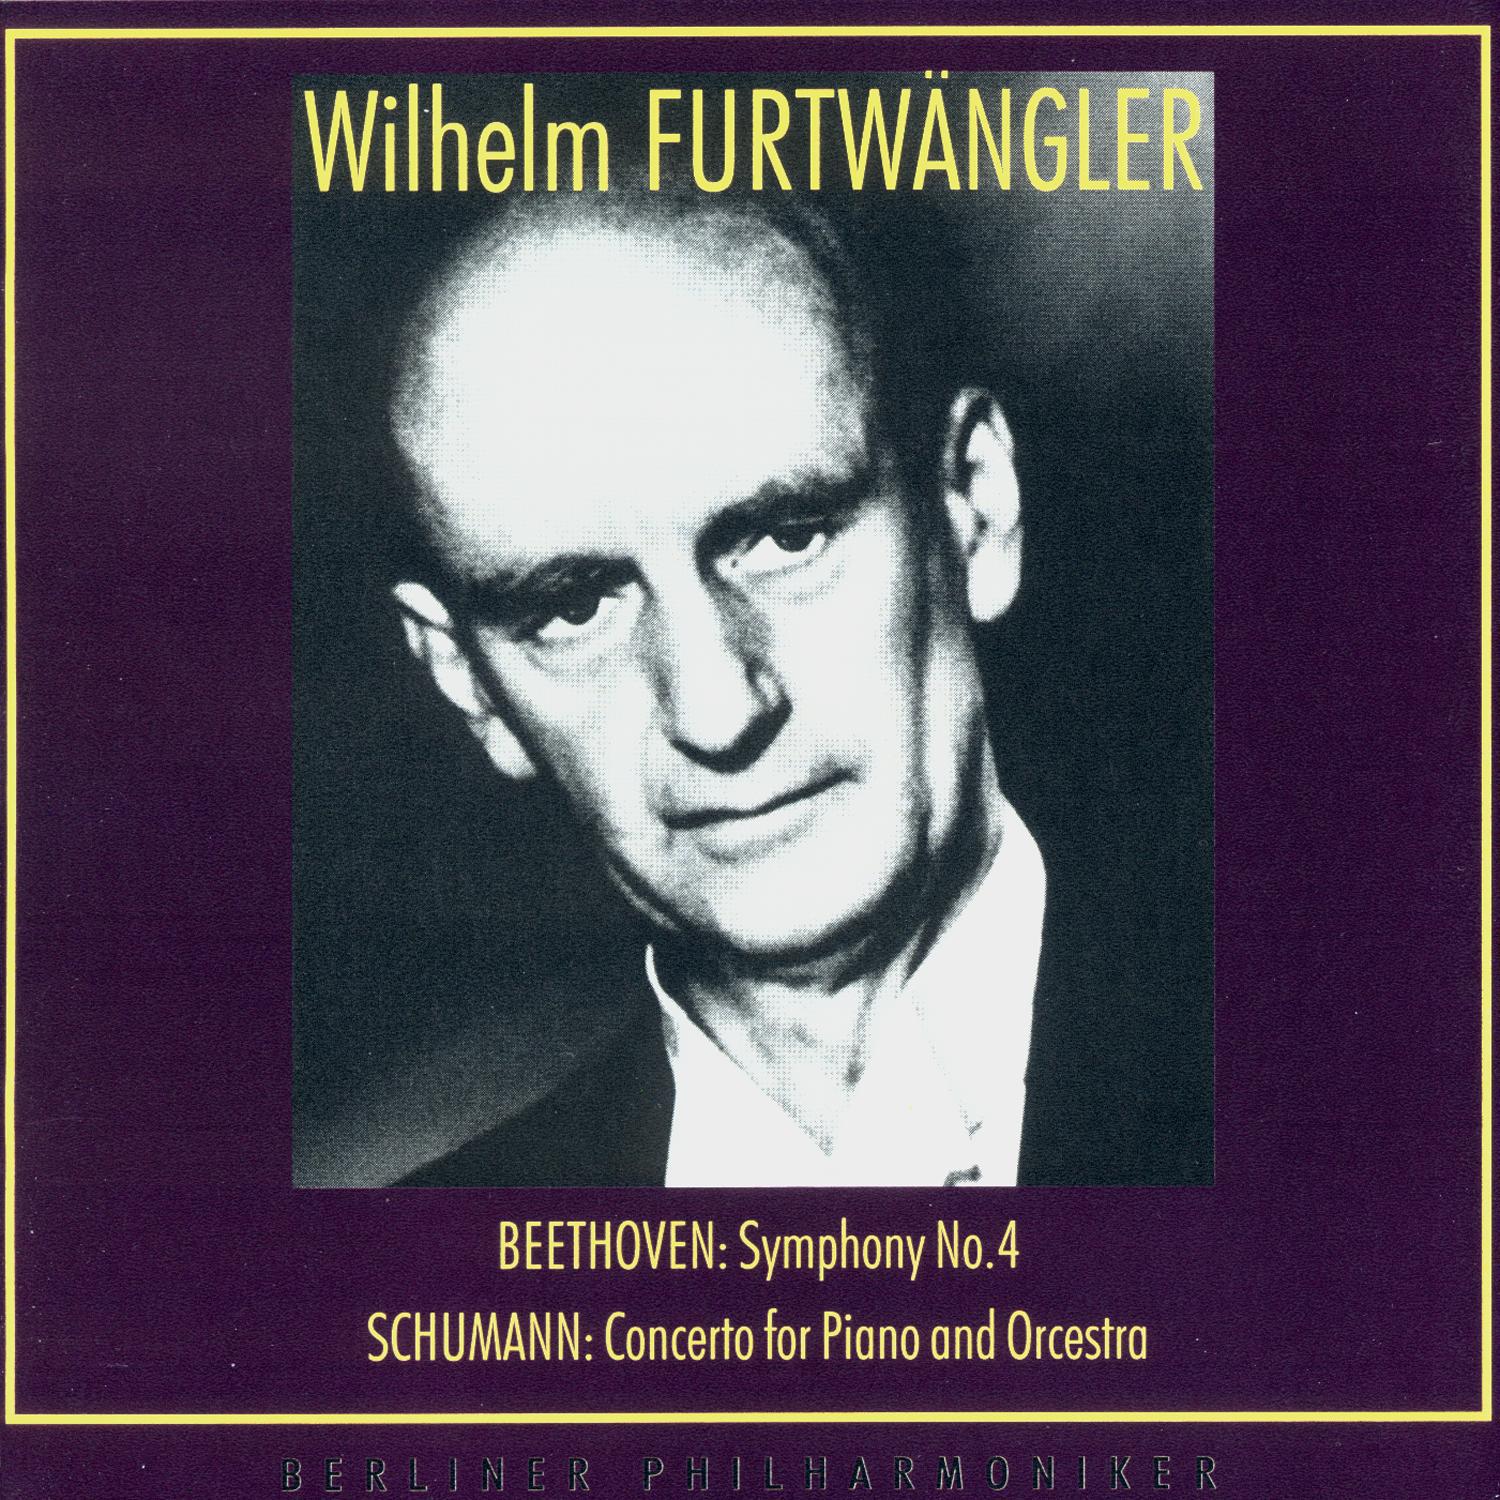 Wilhelm Furtwangler Conducts. Ludwig van Beethoven, Robert Schumann